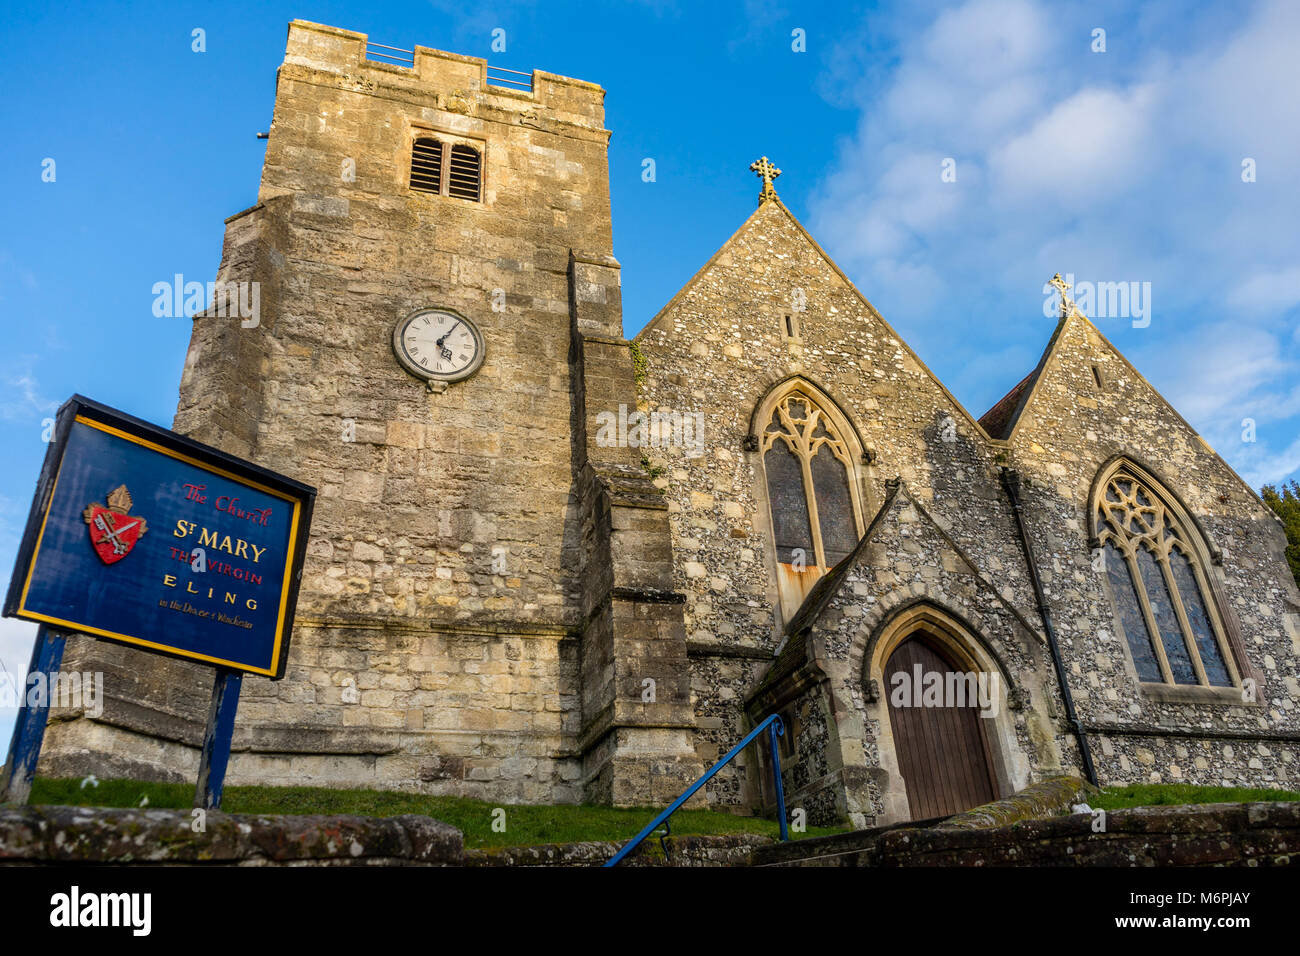 La Iglesia de Santa María la Virgen en Eling, Hampshire, Inglaterra, Reino Unido. Foto de stock